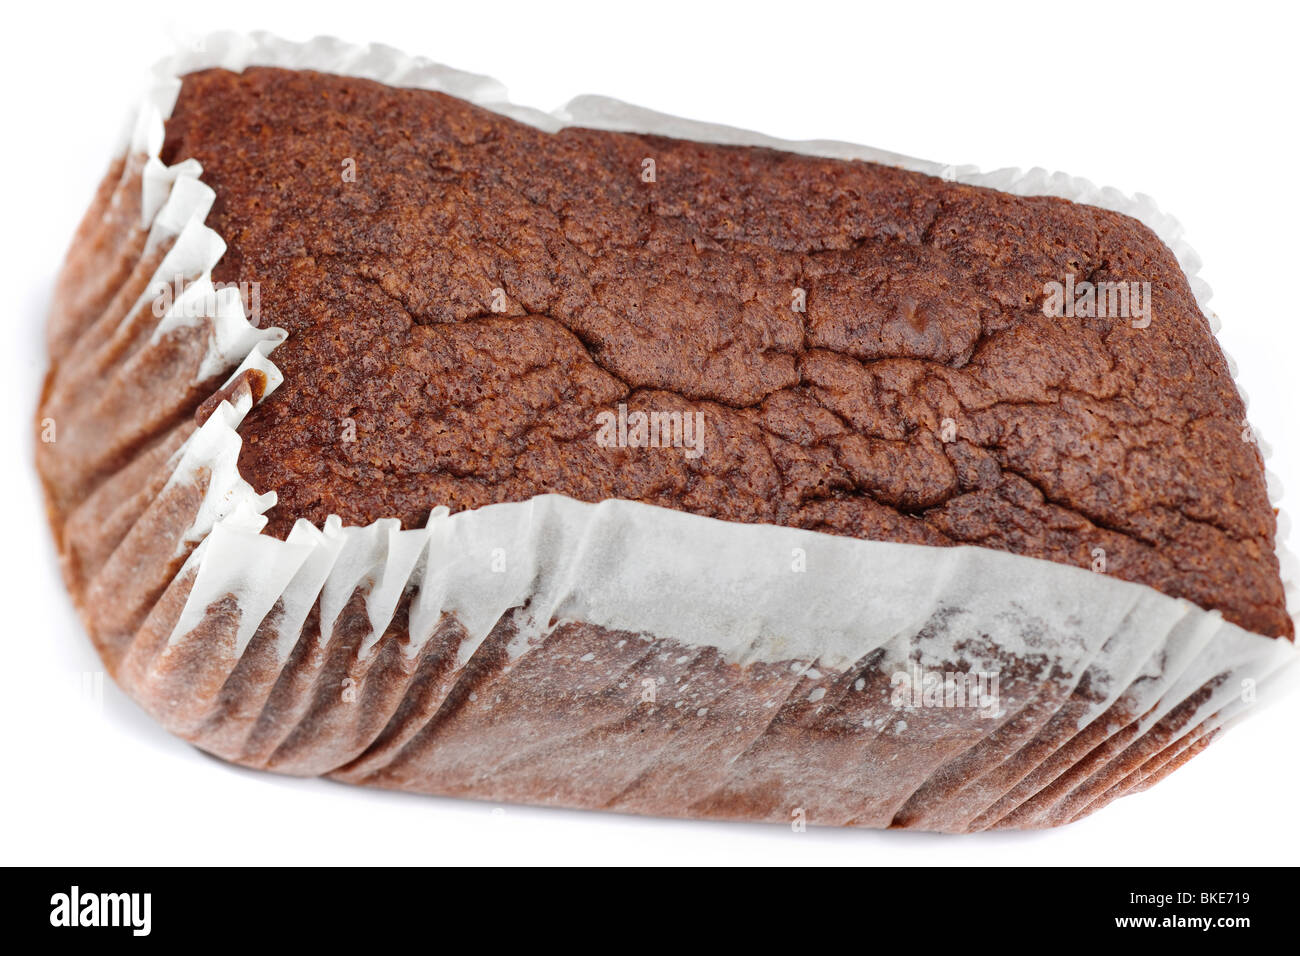 Gâteau au chocolat dans un simple emballage ingraissable Banque D'Images